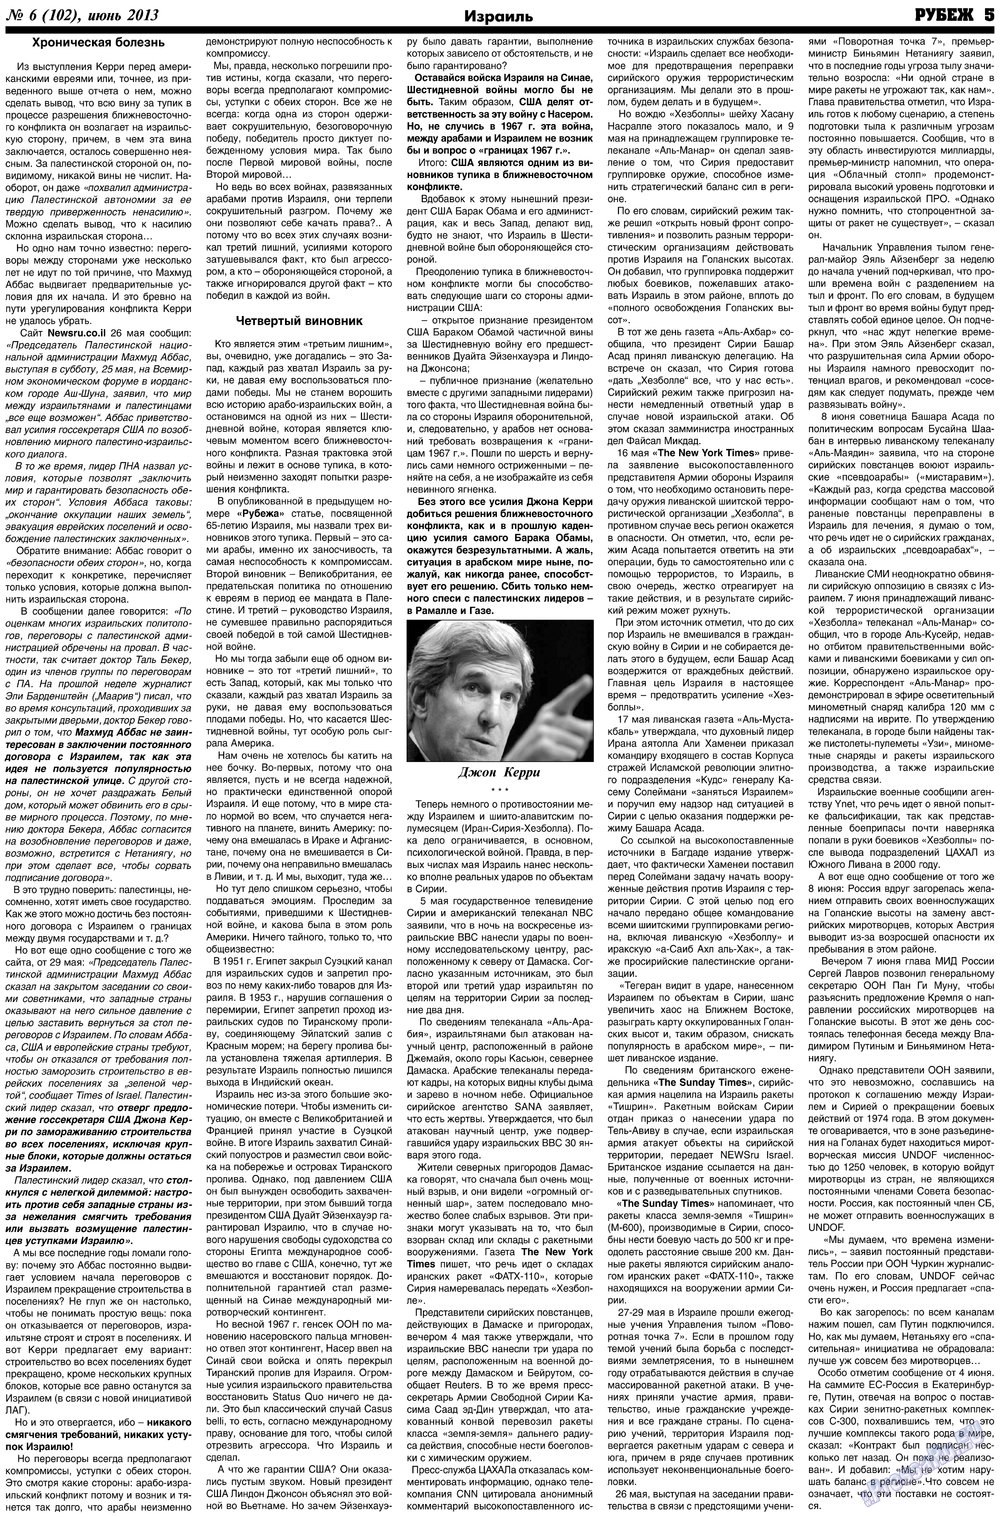 Рубеж (газета). 2013 год, номер 6, стр. 5